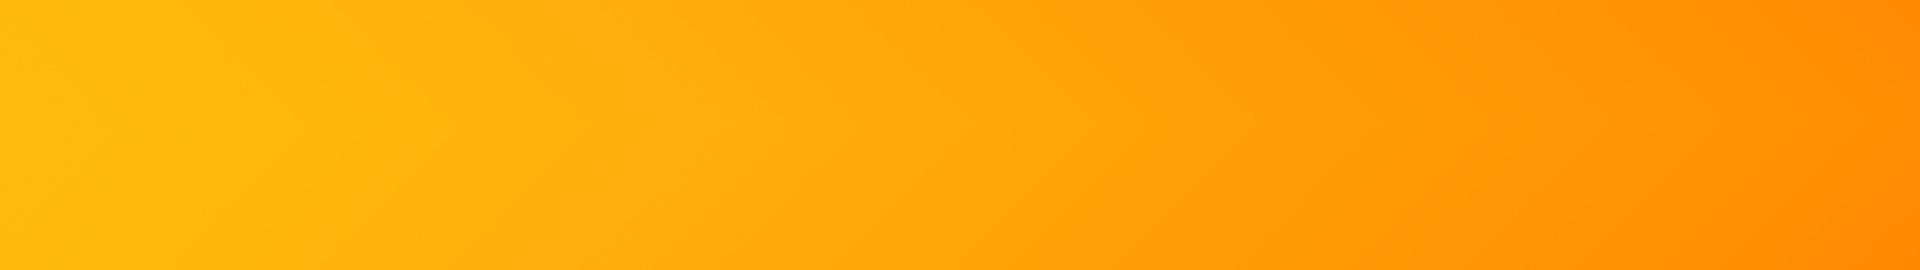 Gradient Orange and Yellow